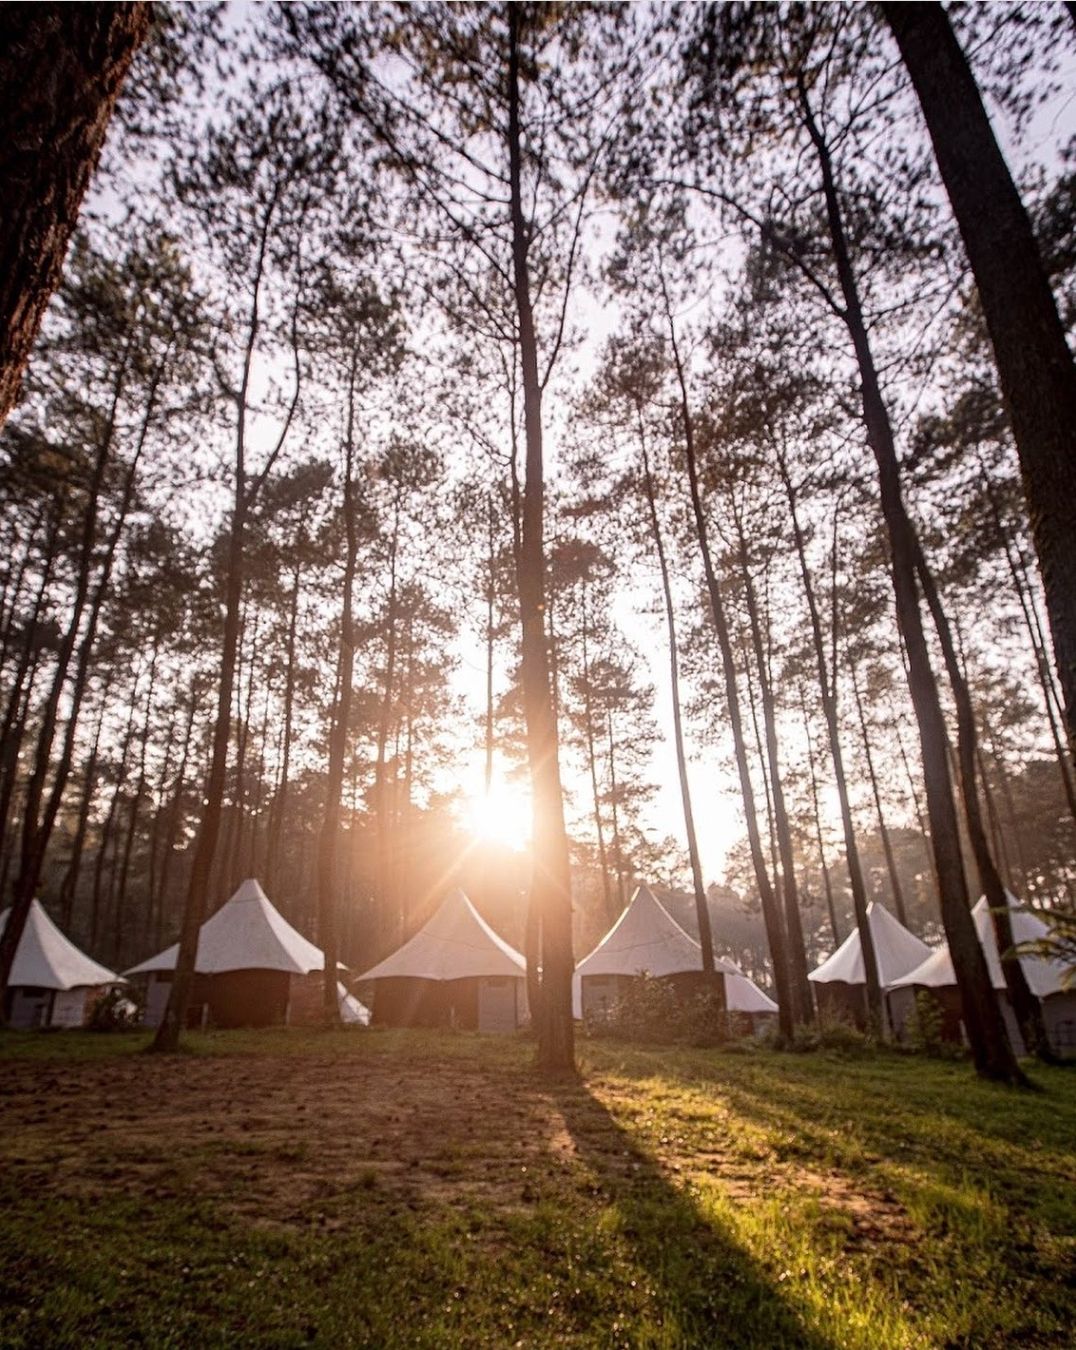 Aktivitas camping menjadi primadona wisata baru di tengah pandemi COVID-19